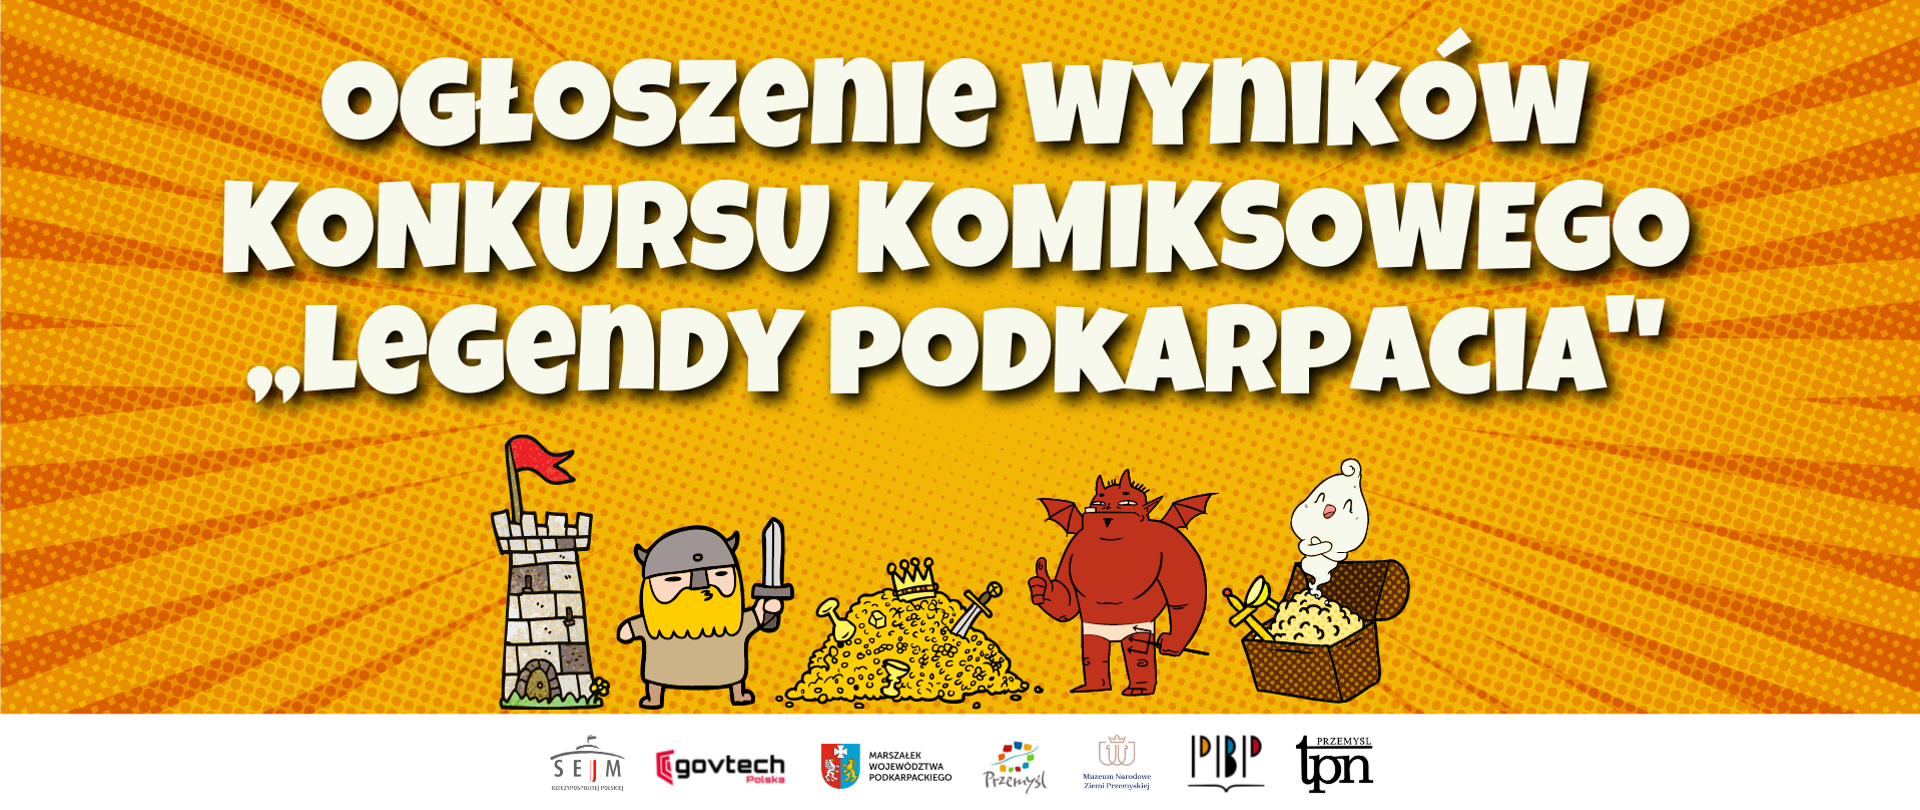 Ogłoszenie wyników konkursu komiksowego ,,Legendy Podkarpacia"